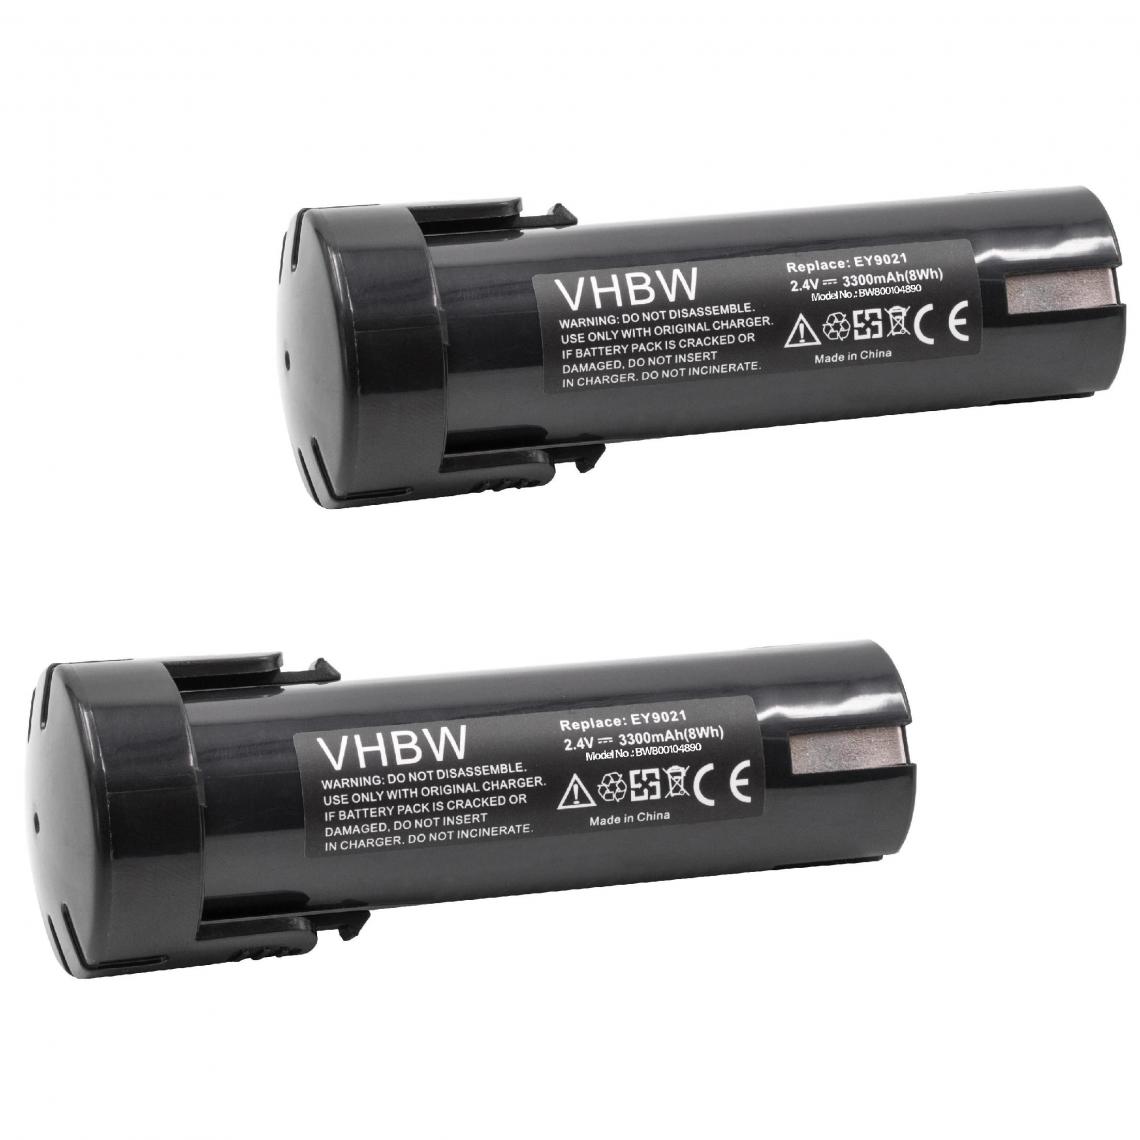 Vhbw - vhbw 2x Batterie compatible avec Panasonic EY3652, EY3652DA, EY3652DR, EY503B, EY503BY, EY6220 outil électrique (3300mAh NiMH 2,4V) - Clouterie